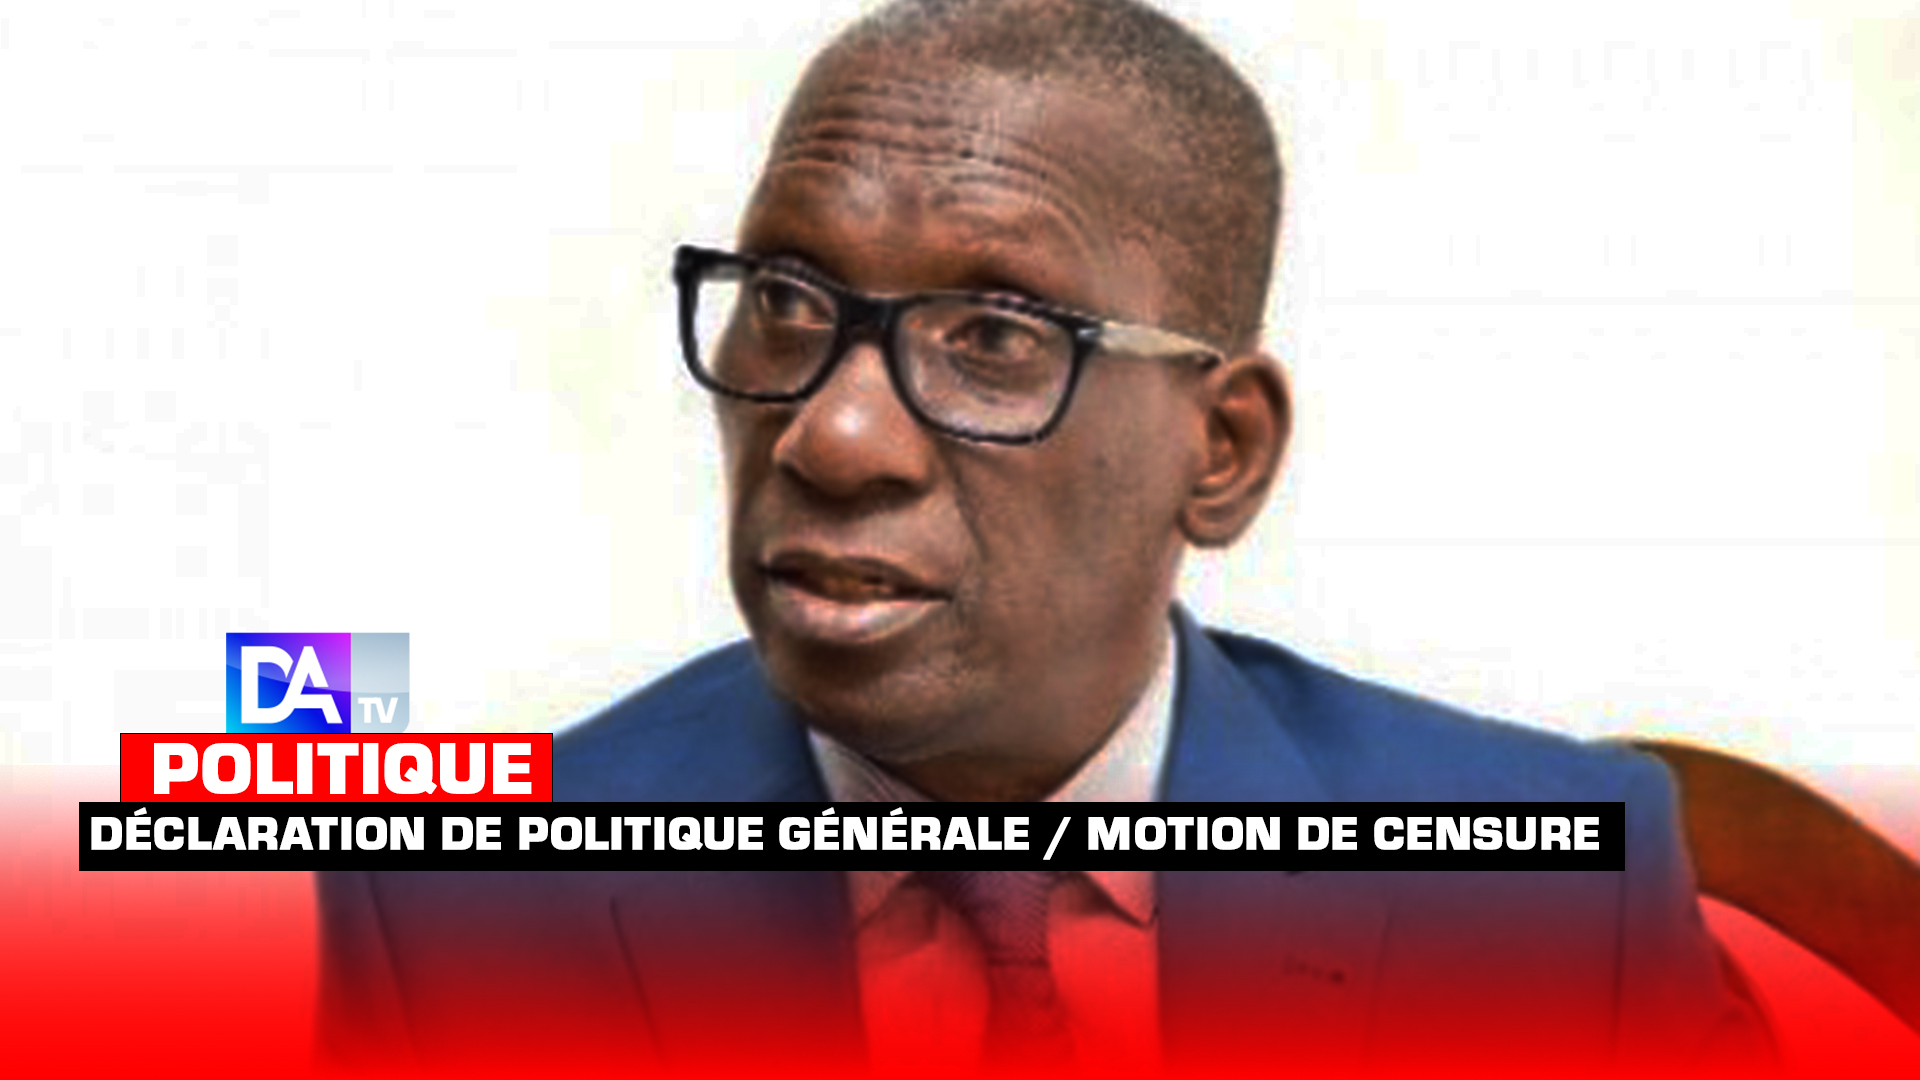 La déclaration de politique générale et la motion de censure : Le nécessaire ajustement (Par Mamadou Diop « Decroix »)